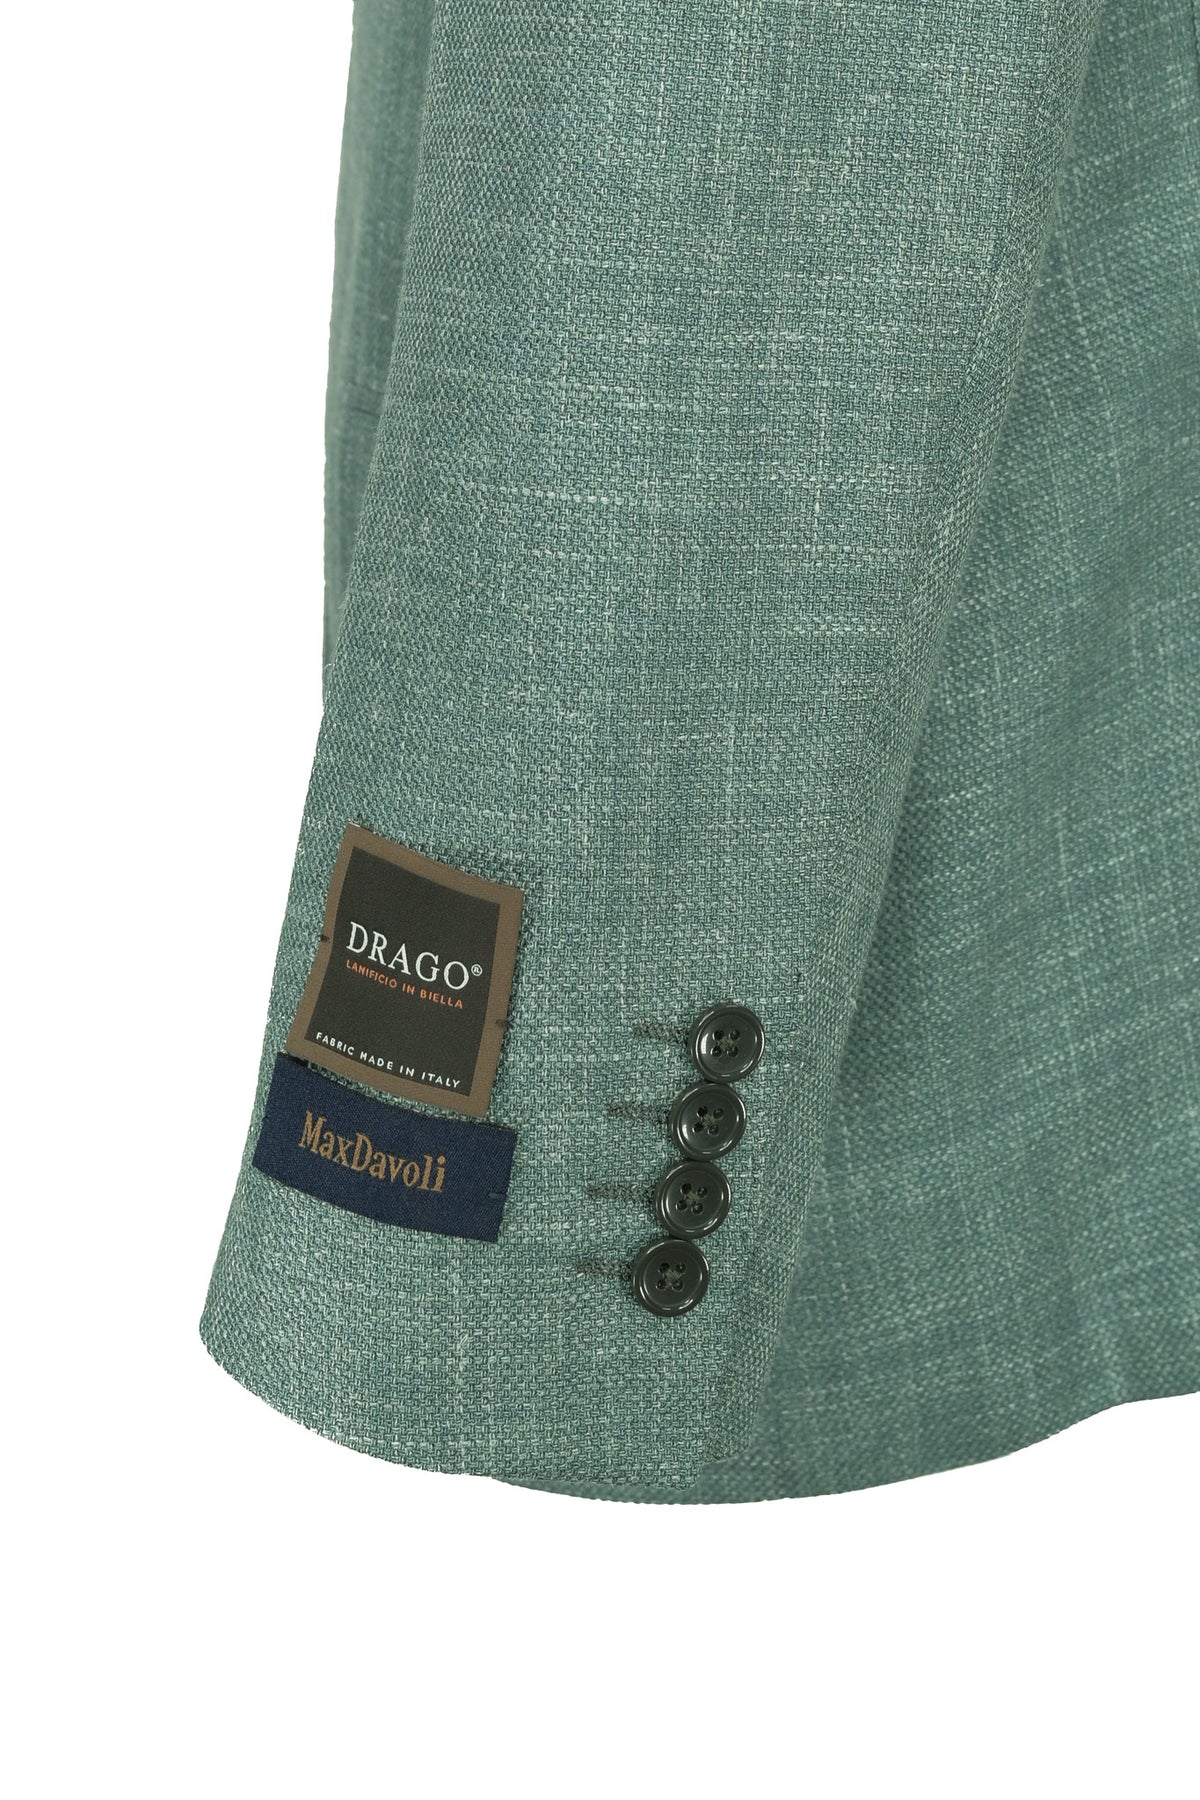 Max Davoli Sport Coat